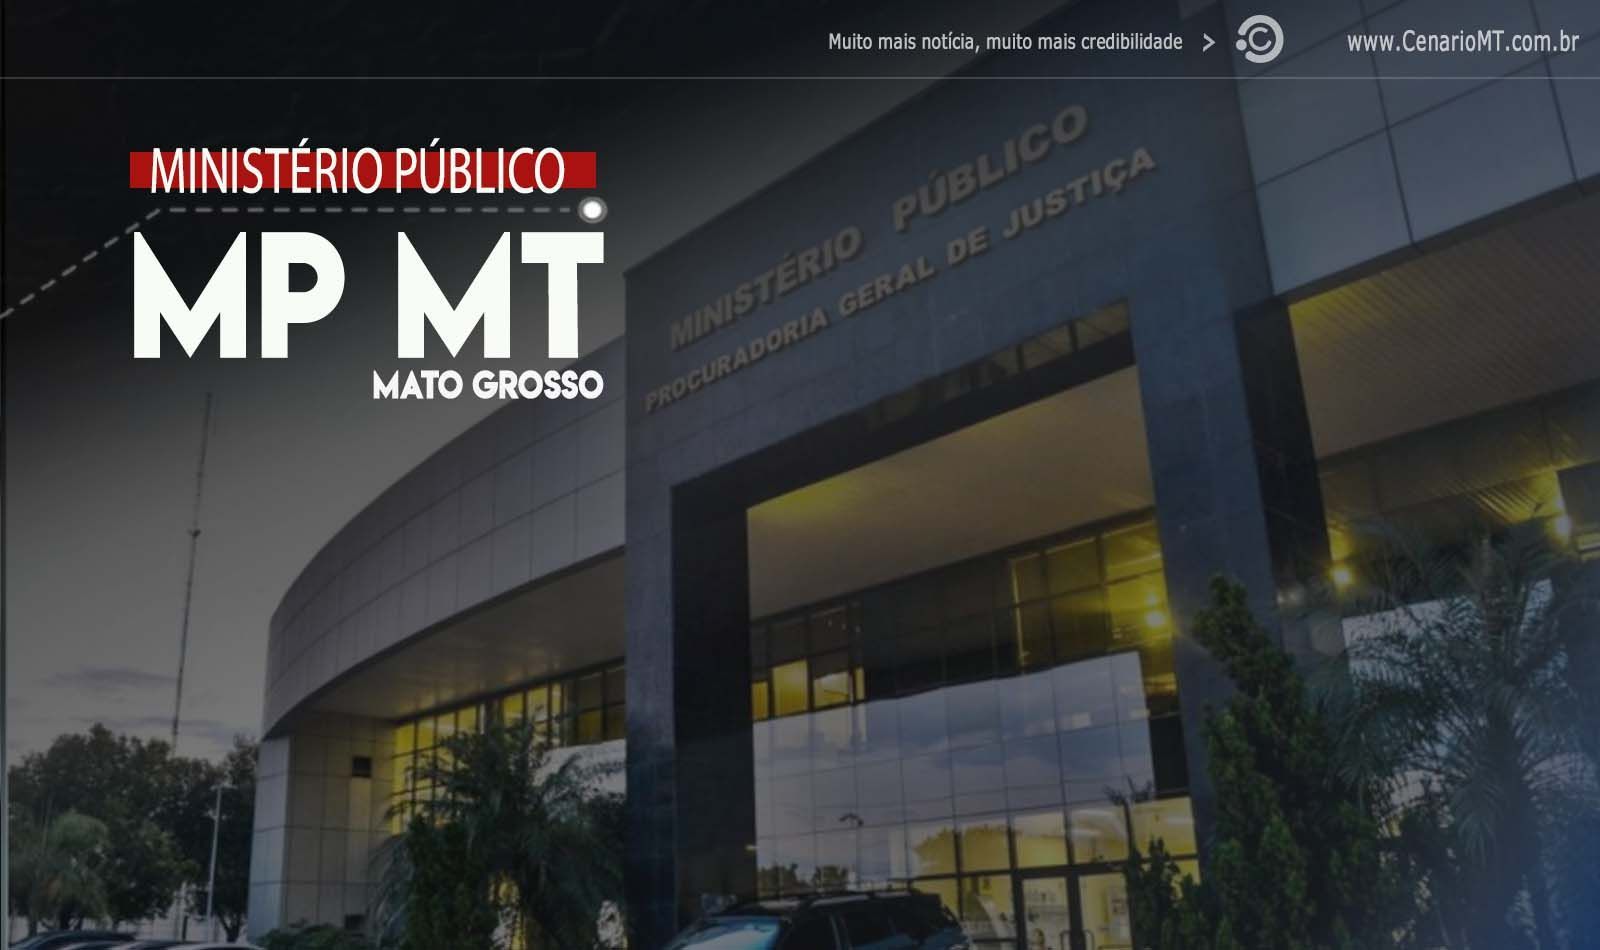 MPMT MINISTERIO PUBLICO DE MATO GROSSO